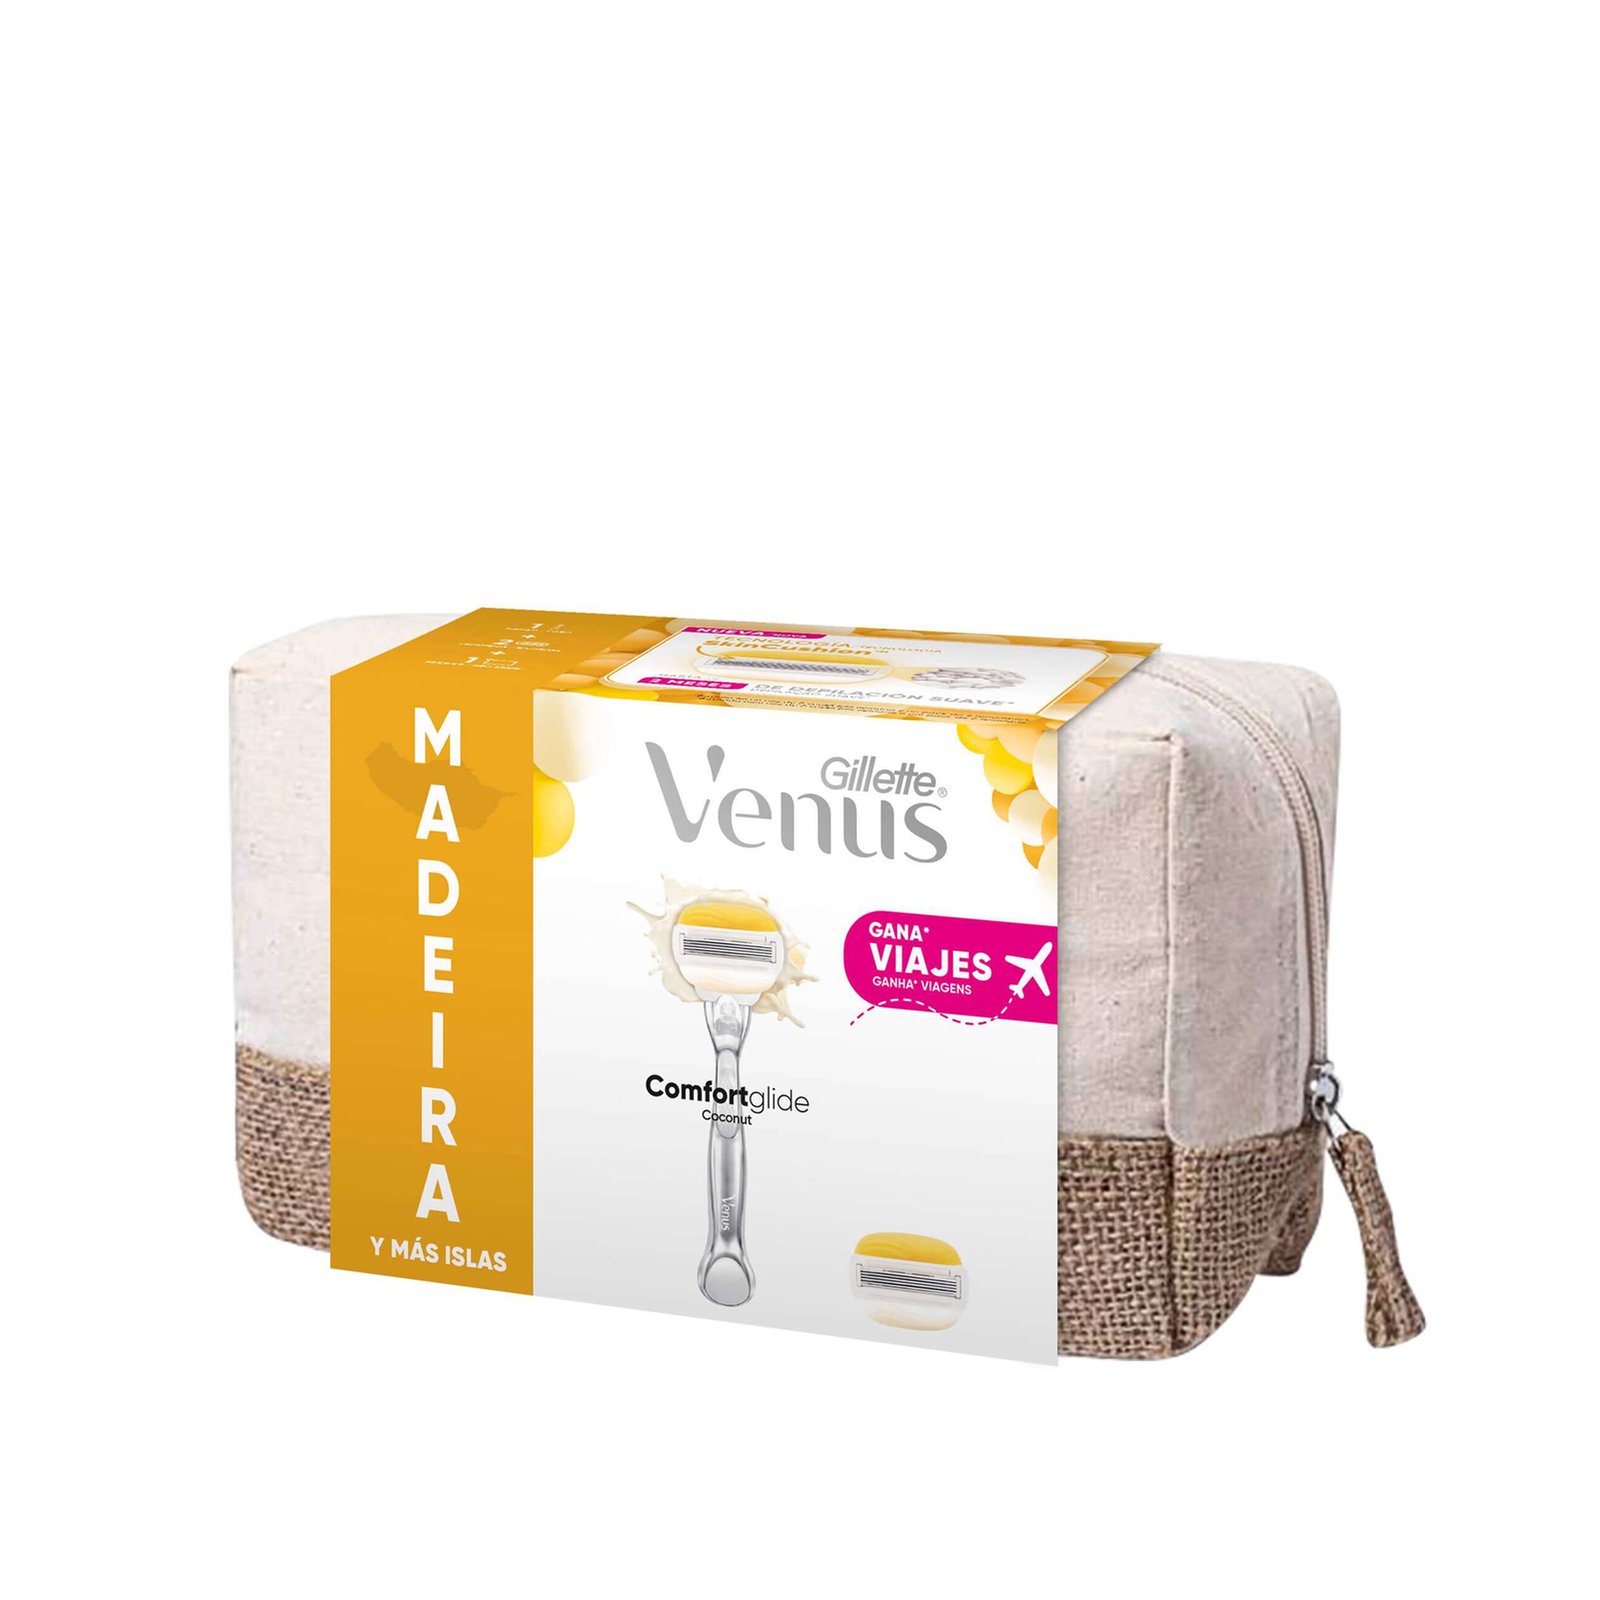 Gillette Venus Comfortglide Coconut Razor + Necessaire